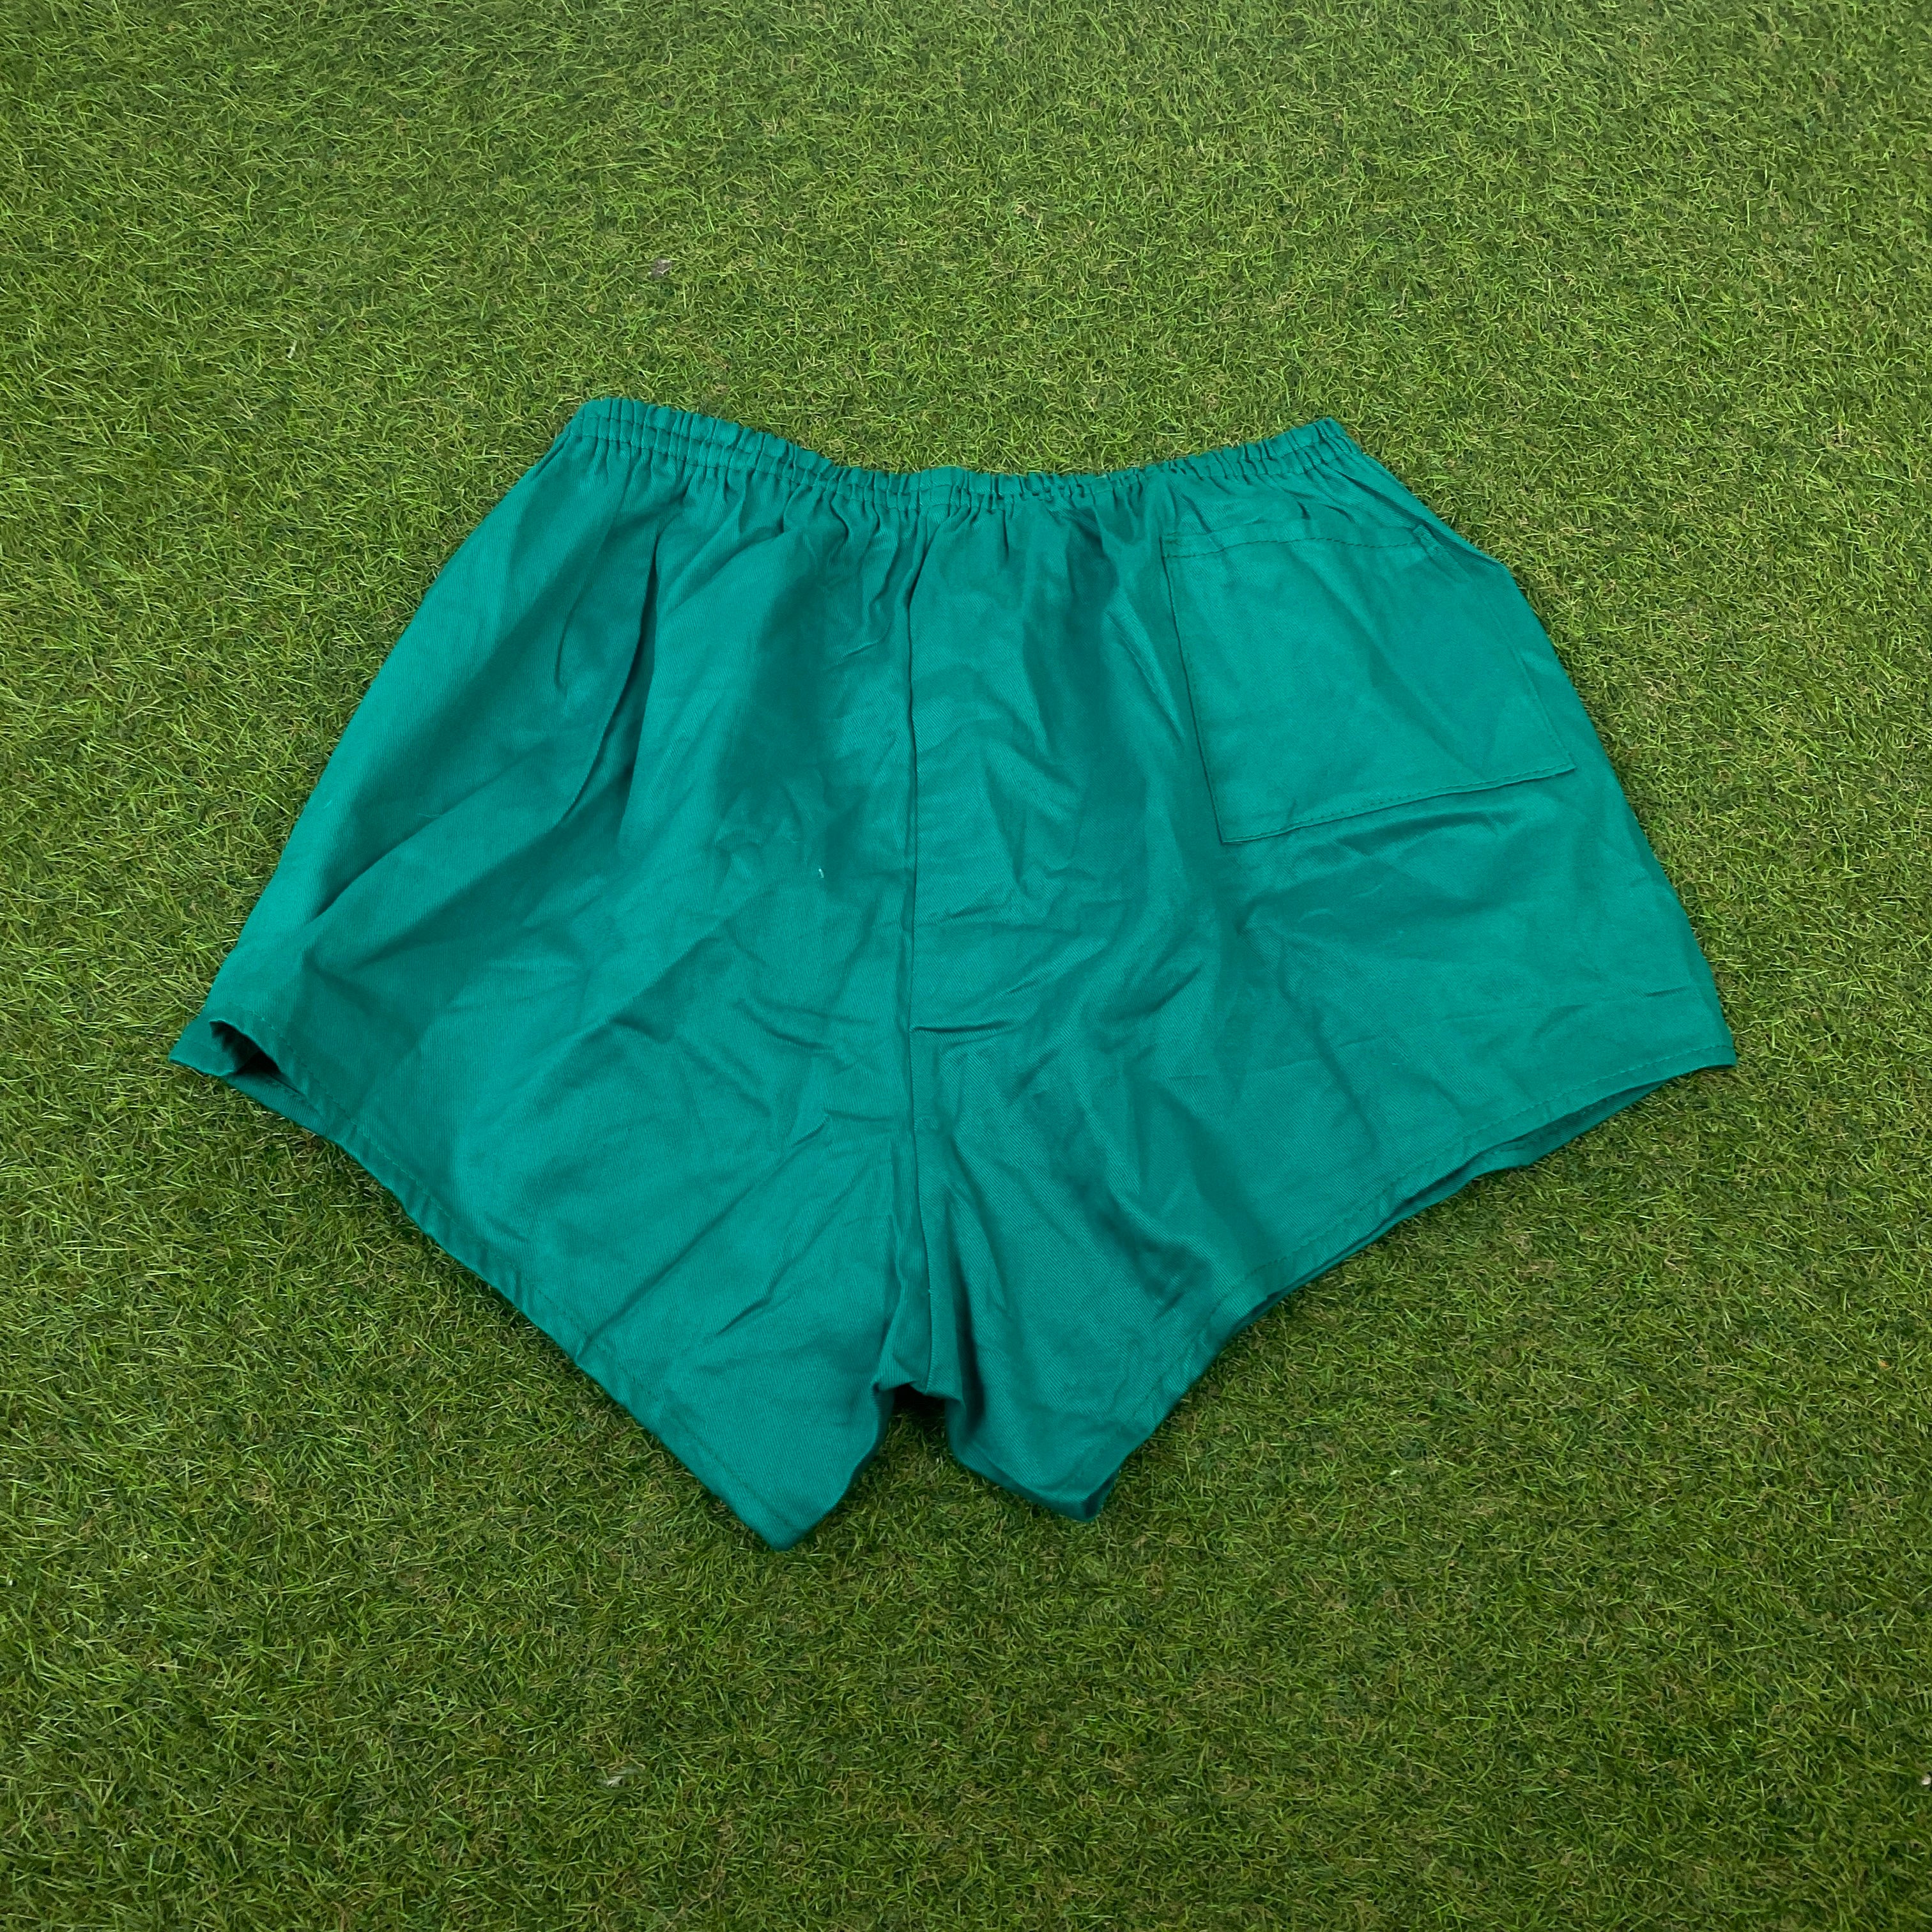 Retro Sprinter Shorts Green Medium